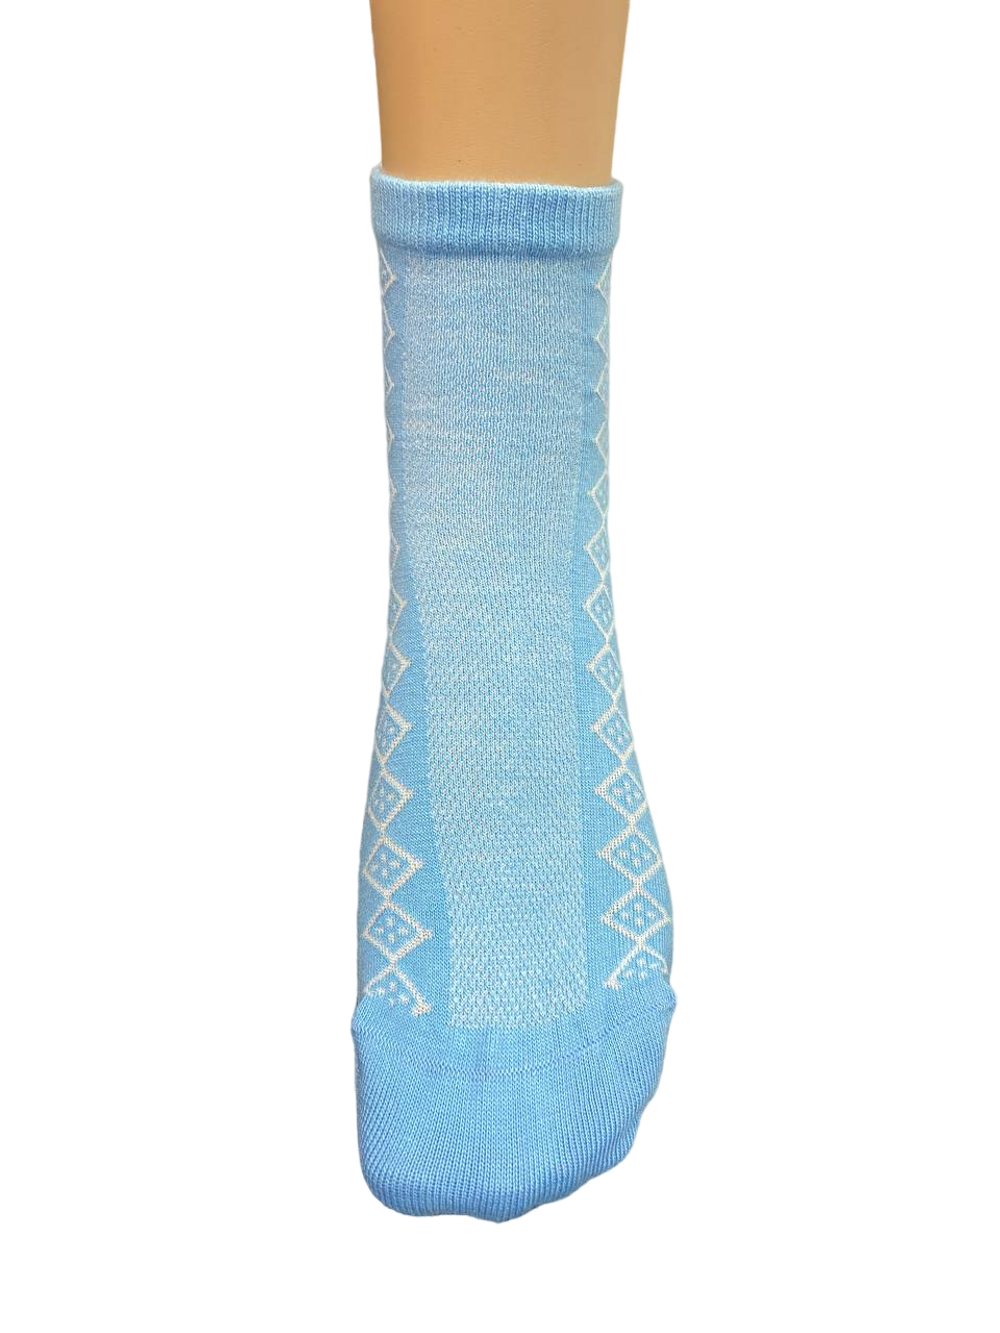 Носки женские Н306-04 голубые